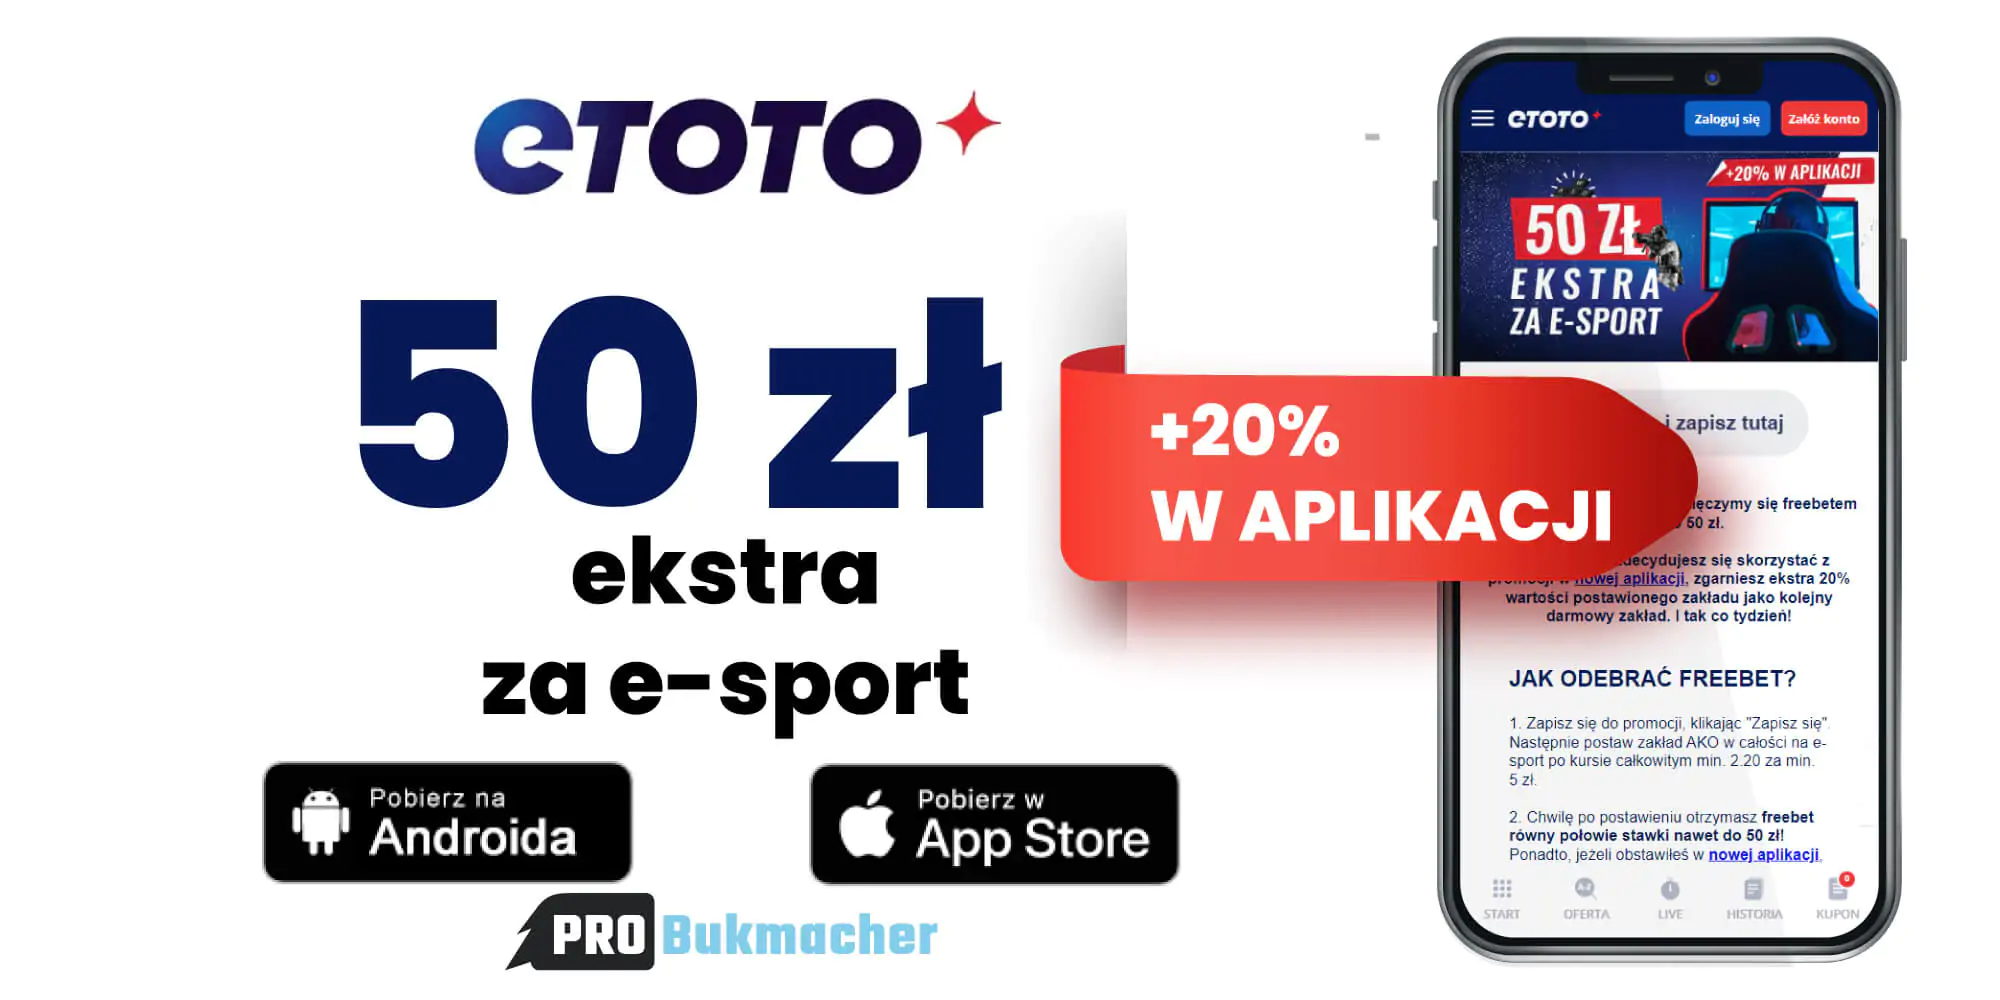 50 zł ekstra za e-sport (+20%) w Etoto